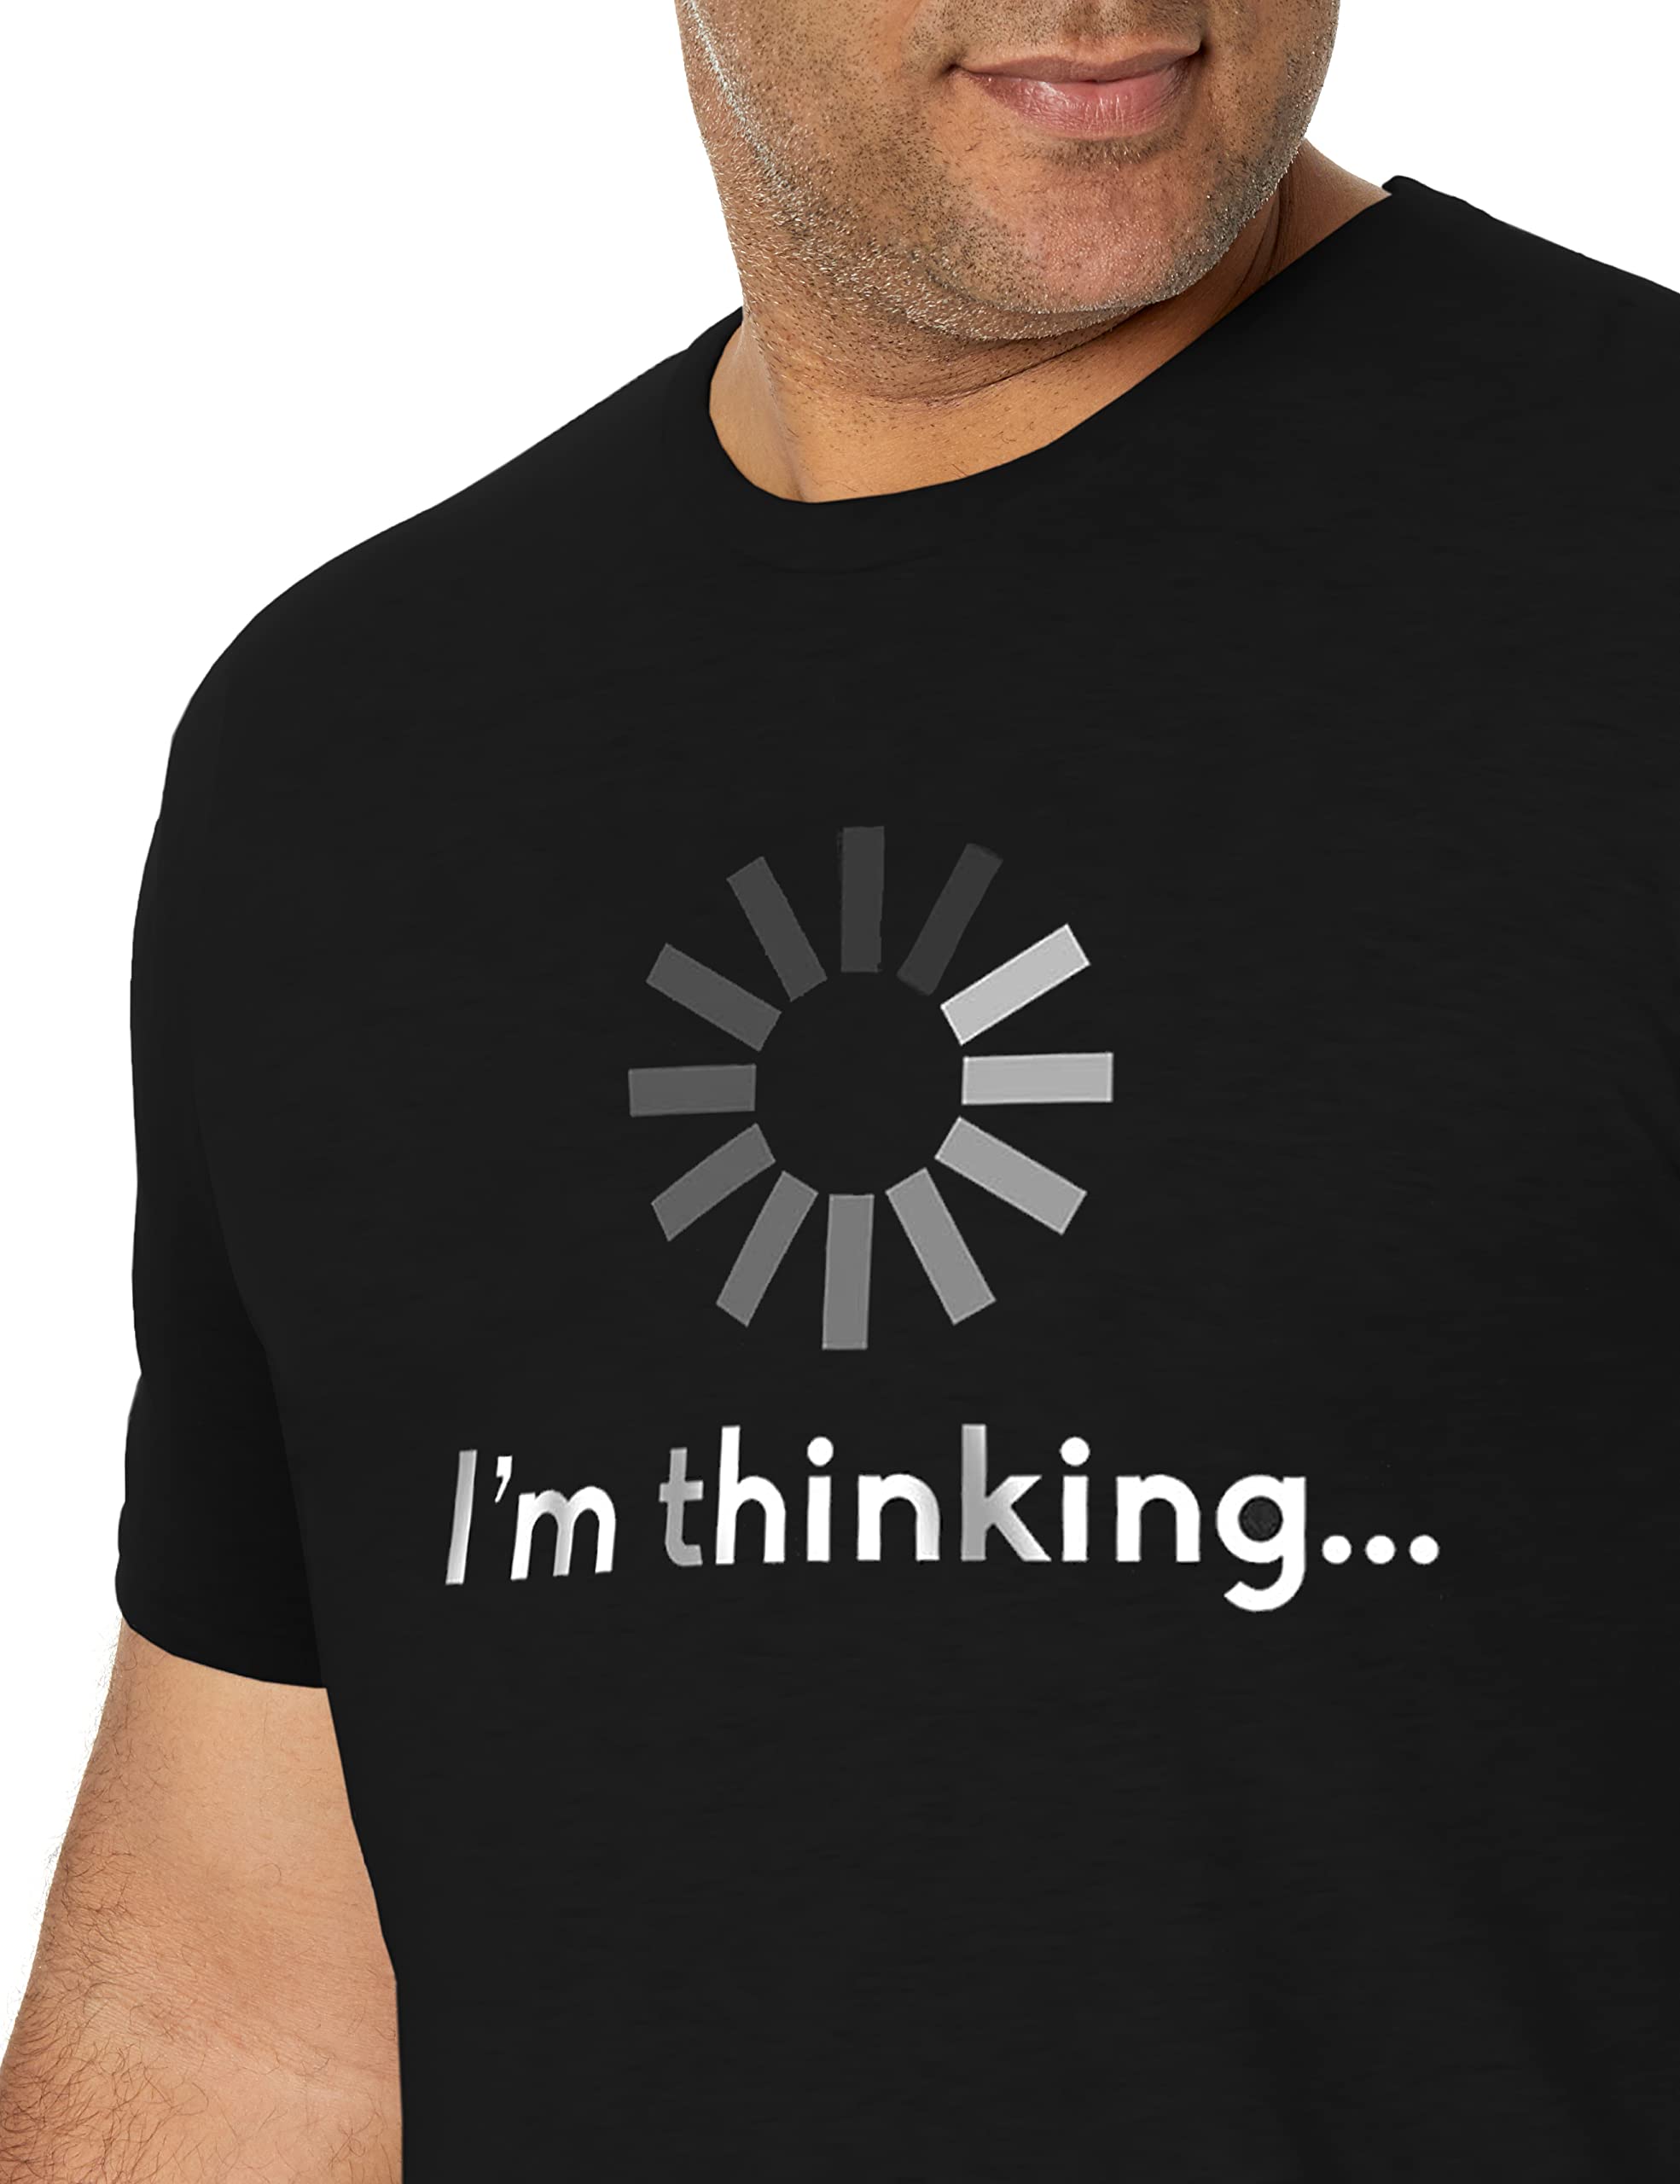 Estou pensando em imprimir camiseta masculina com slogan 